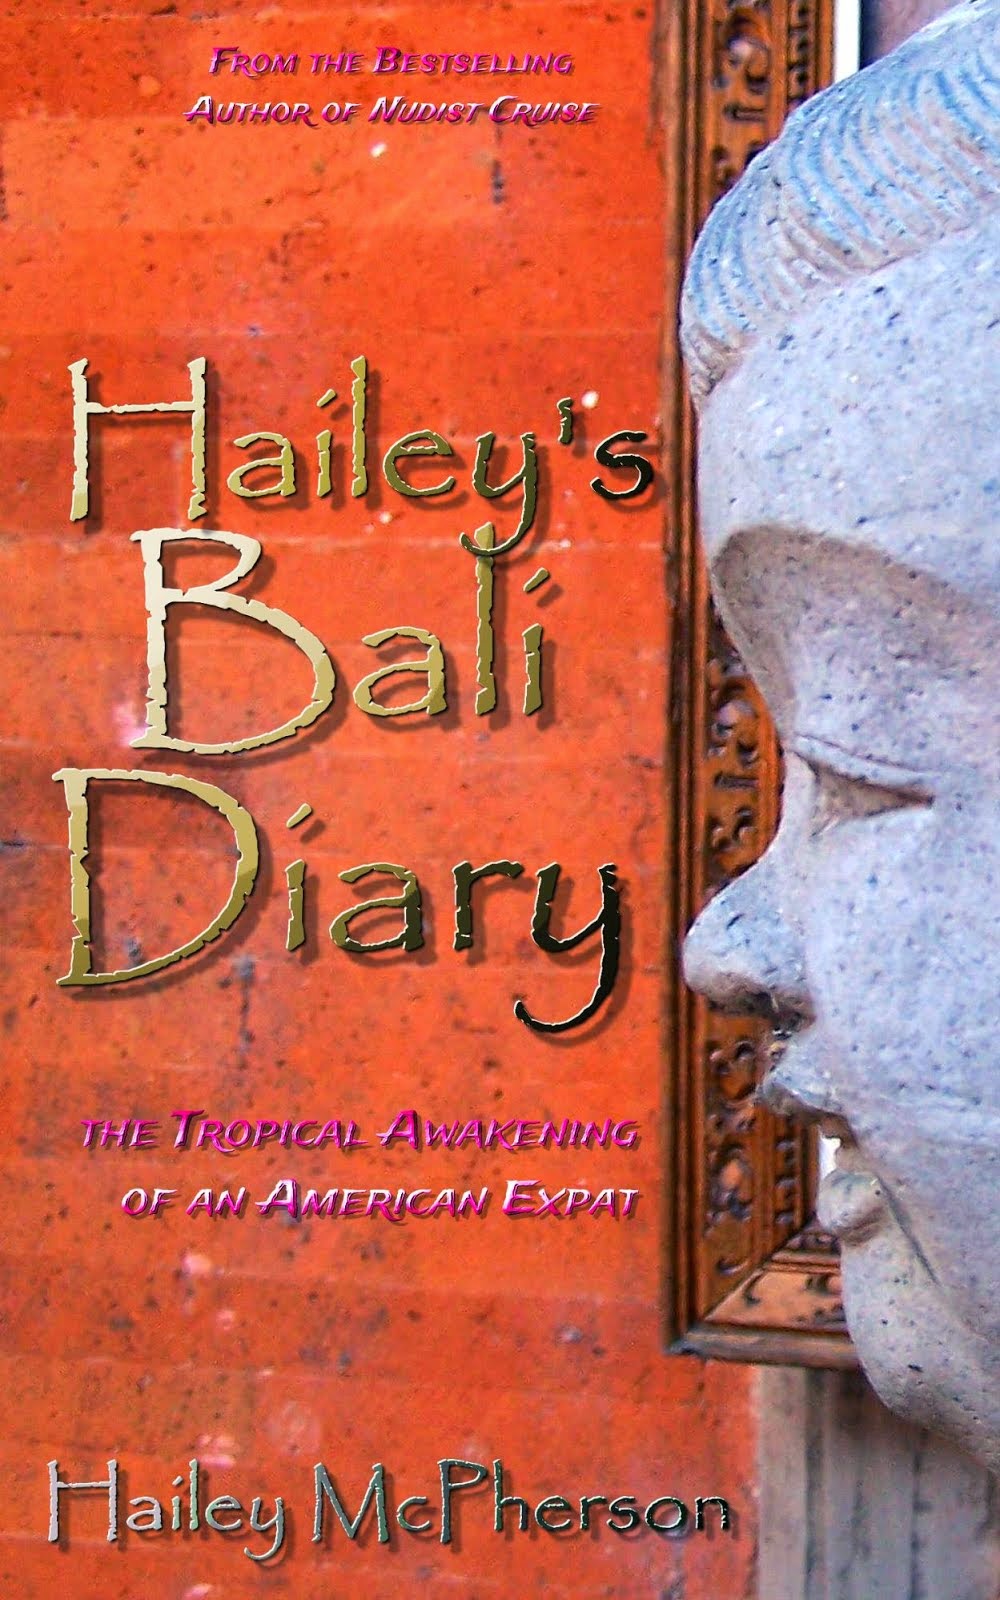 Hailey's Bali Diary